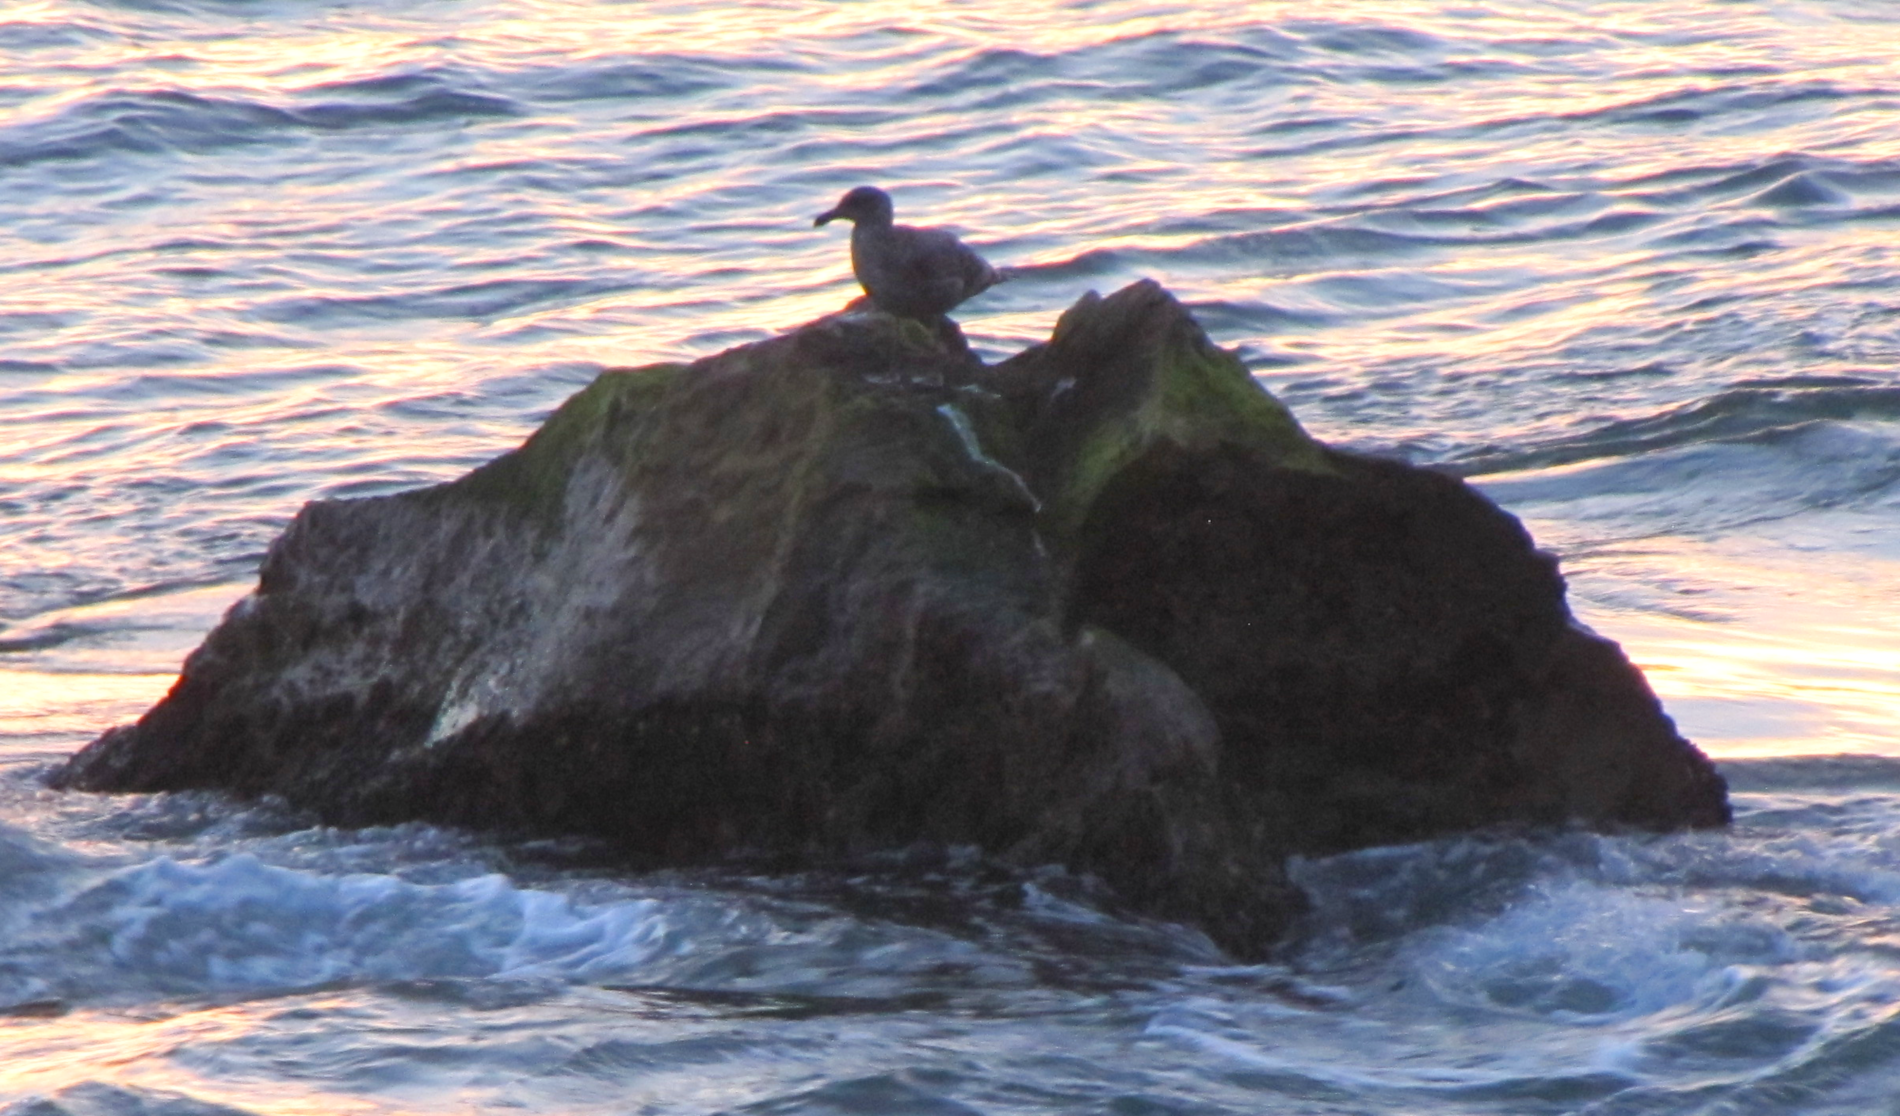 Seagul on rock